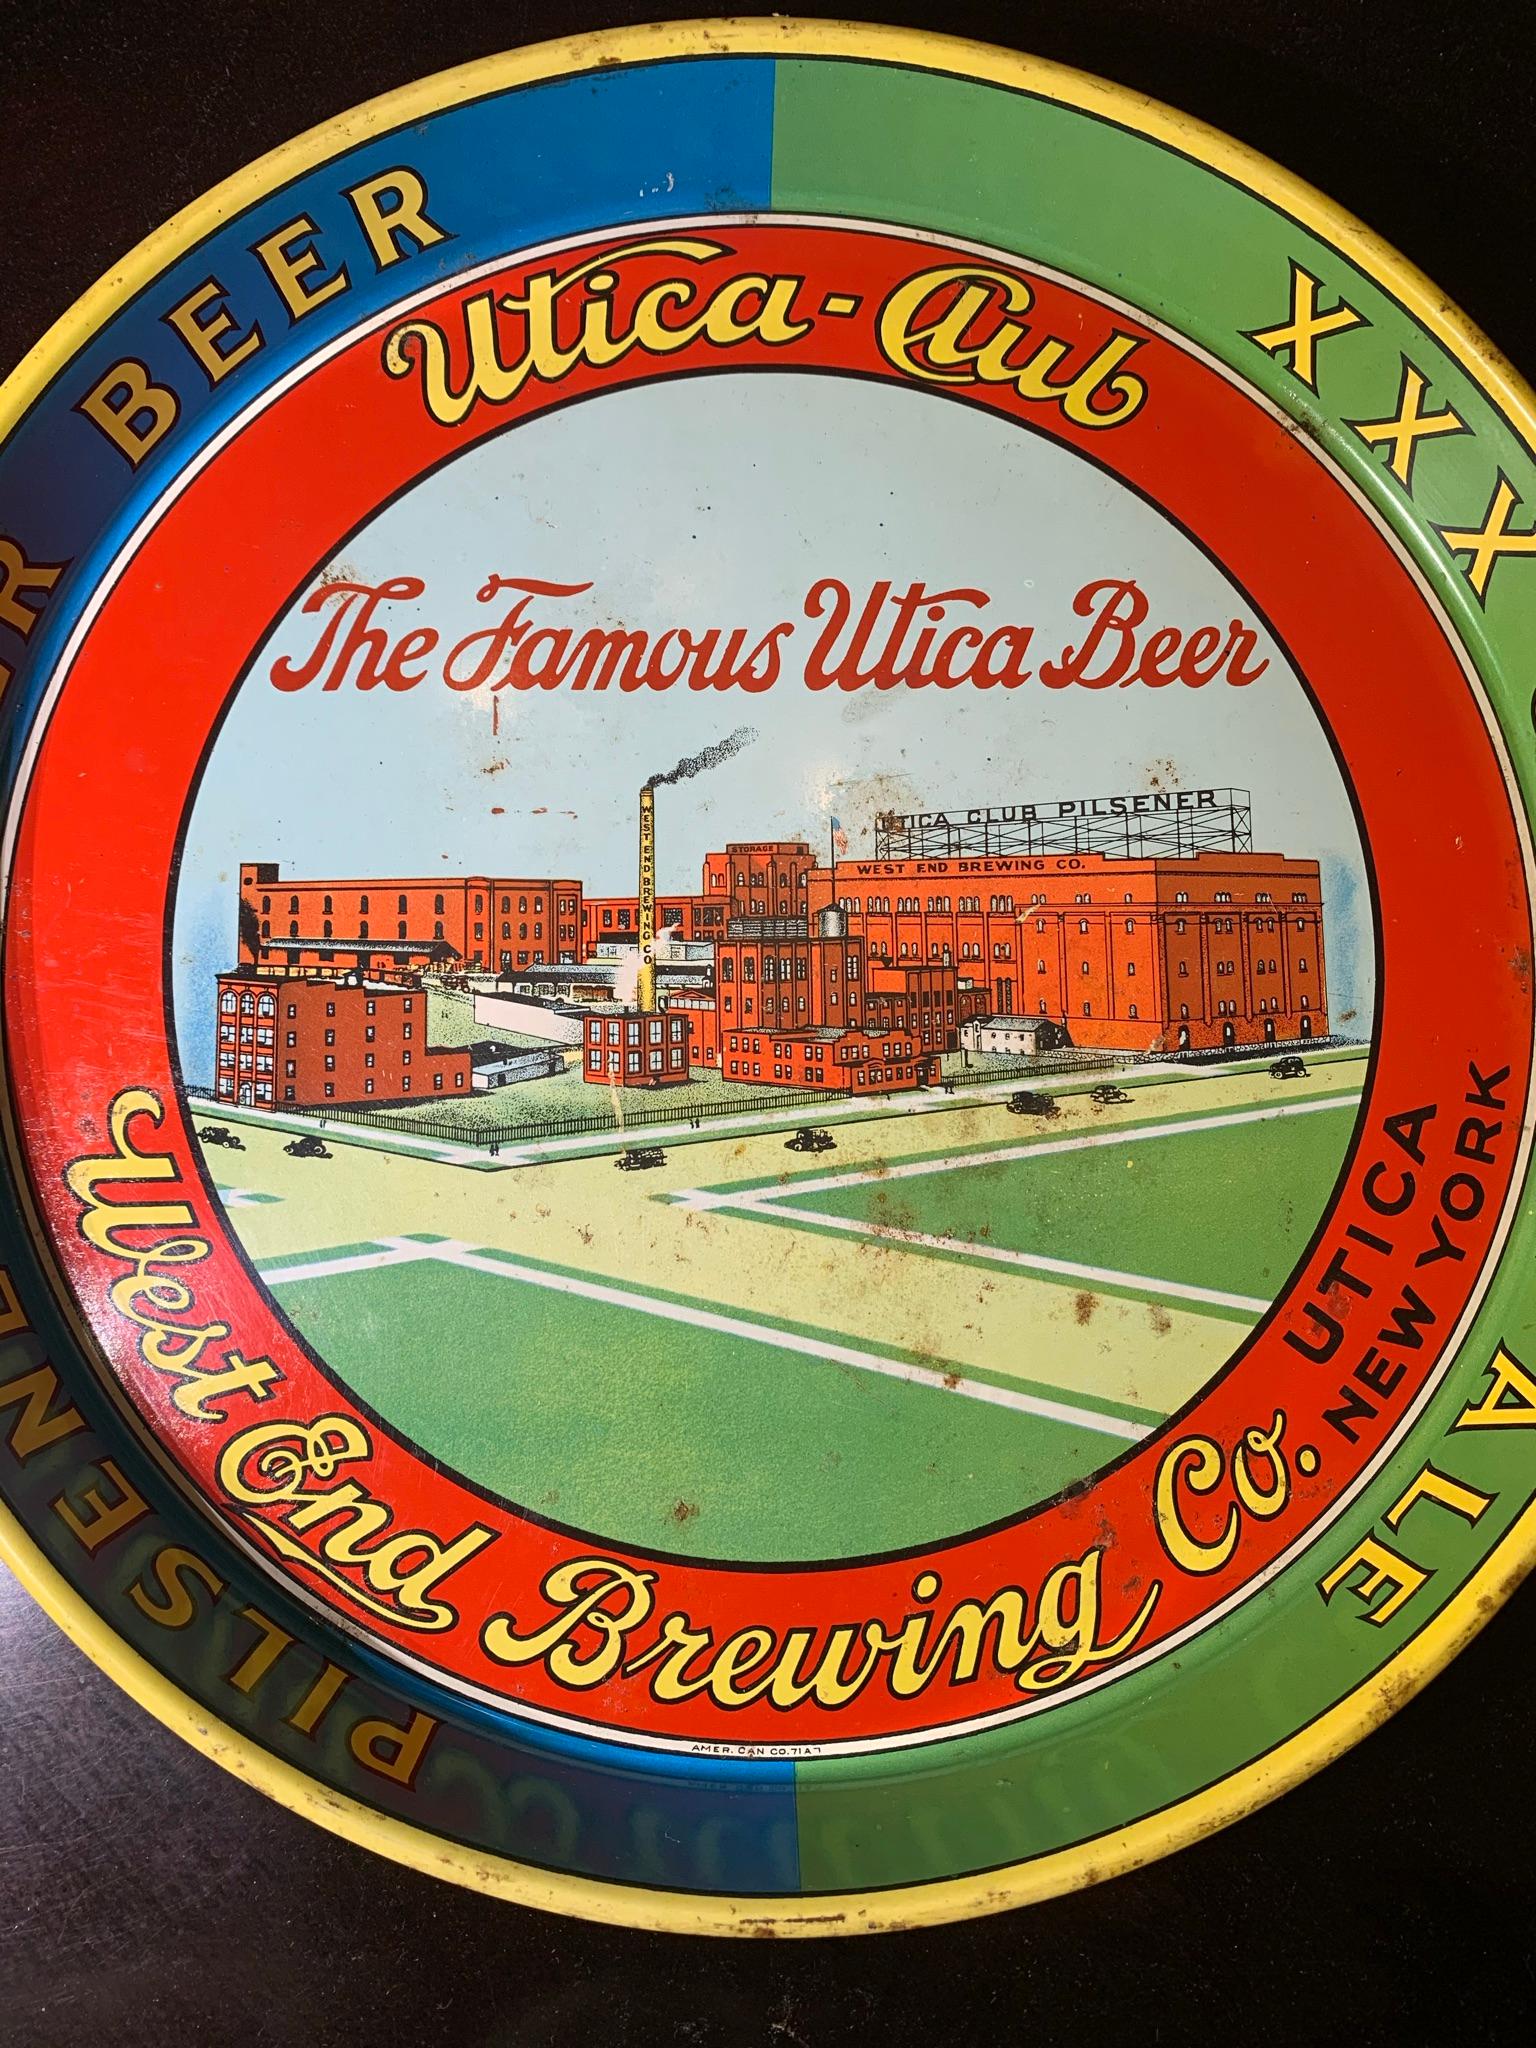 Utica - Club West End Brewing Co. Metal Tray.